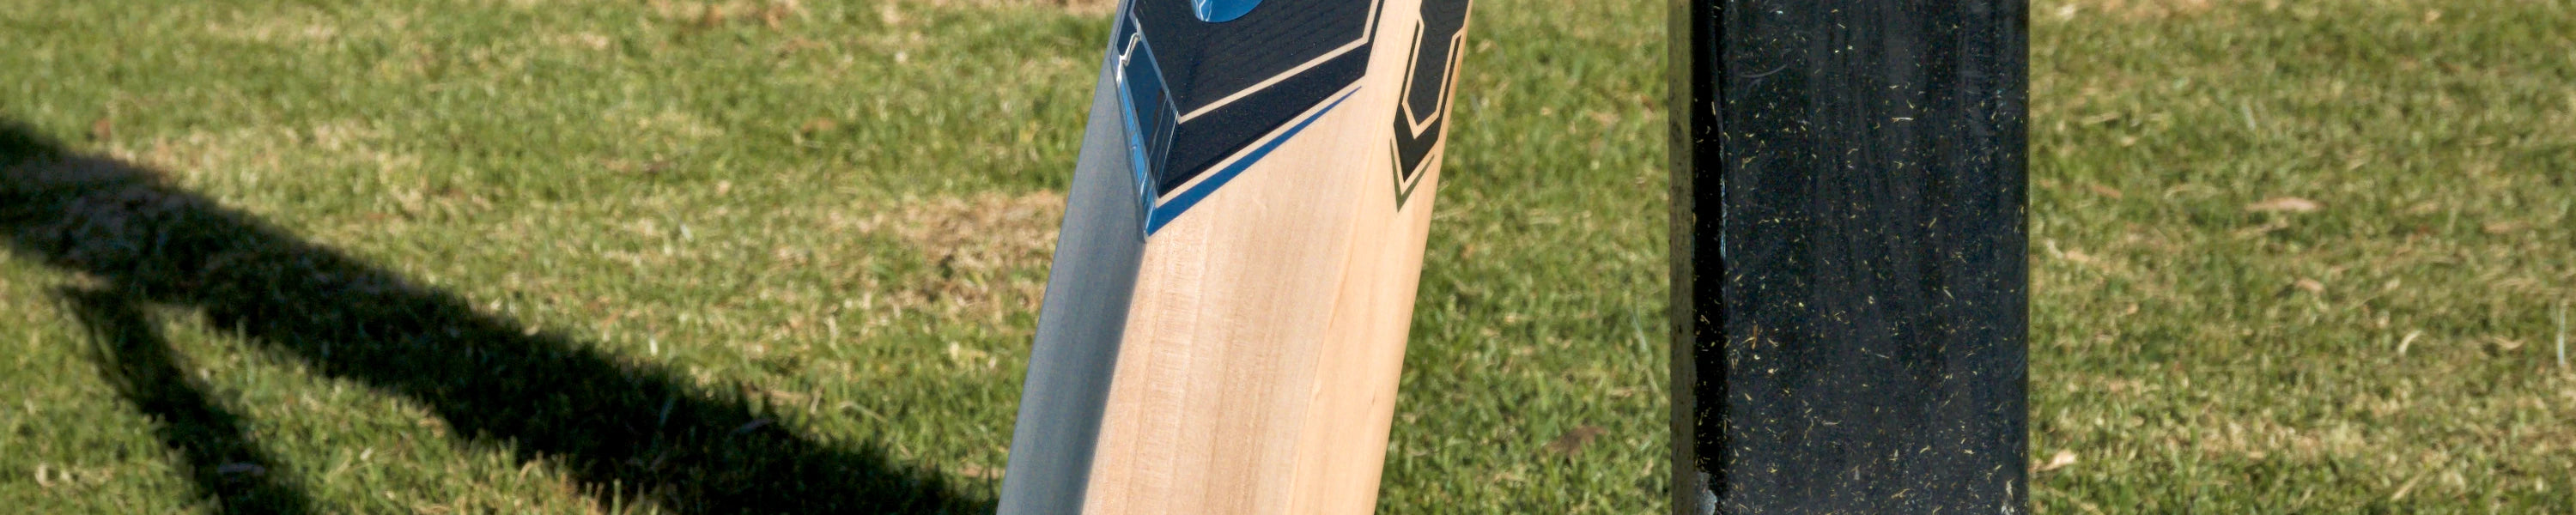 Adidas XT Cricket Bats